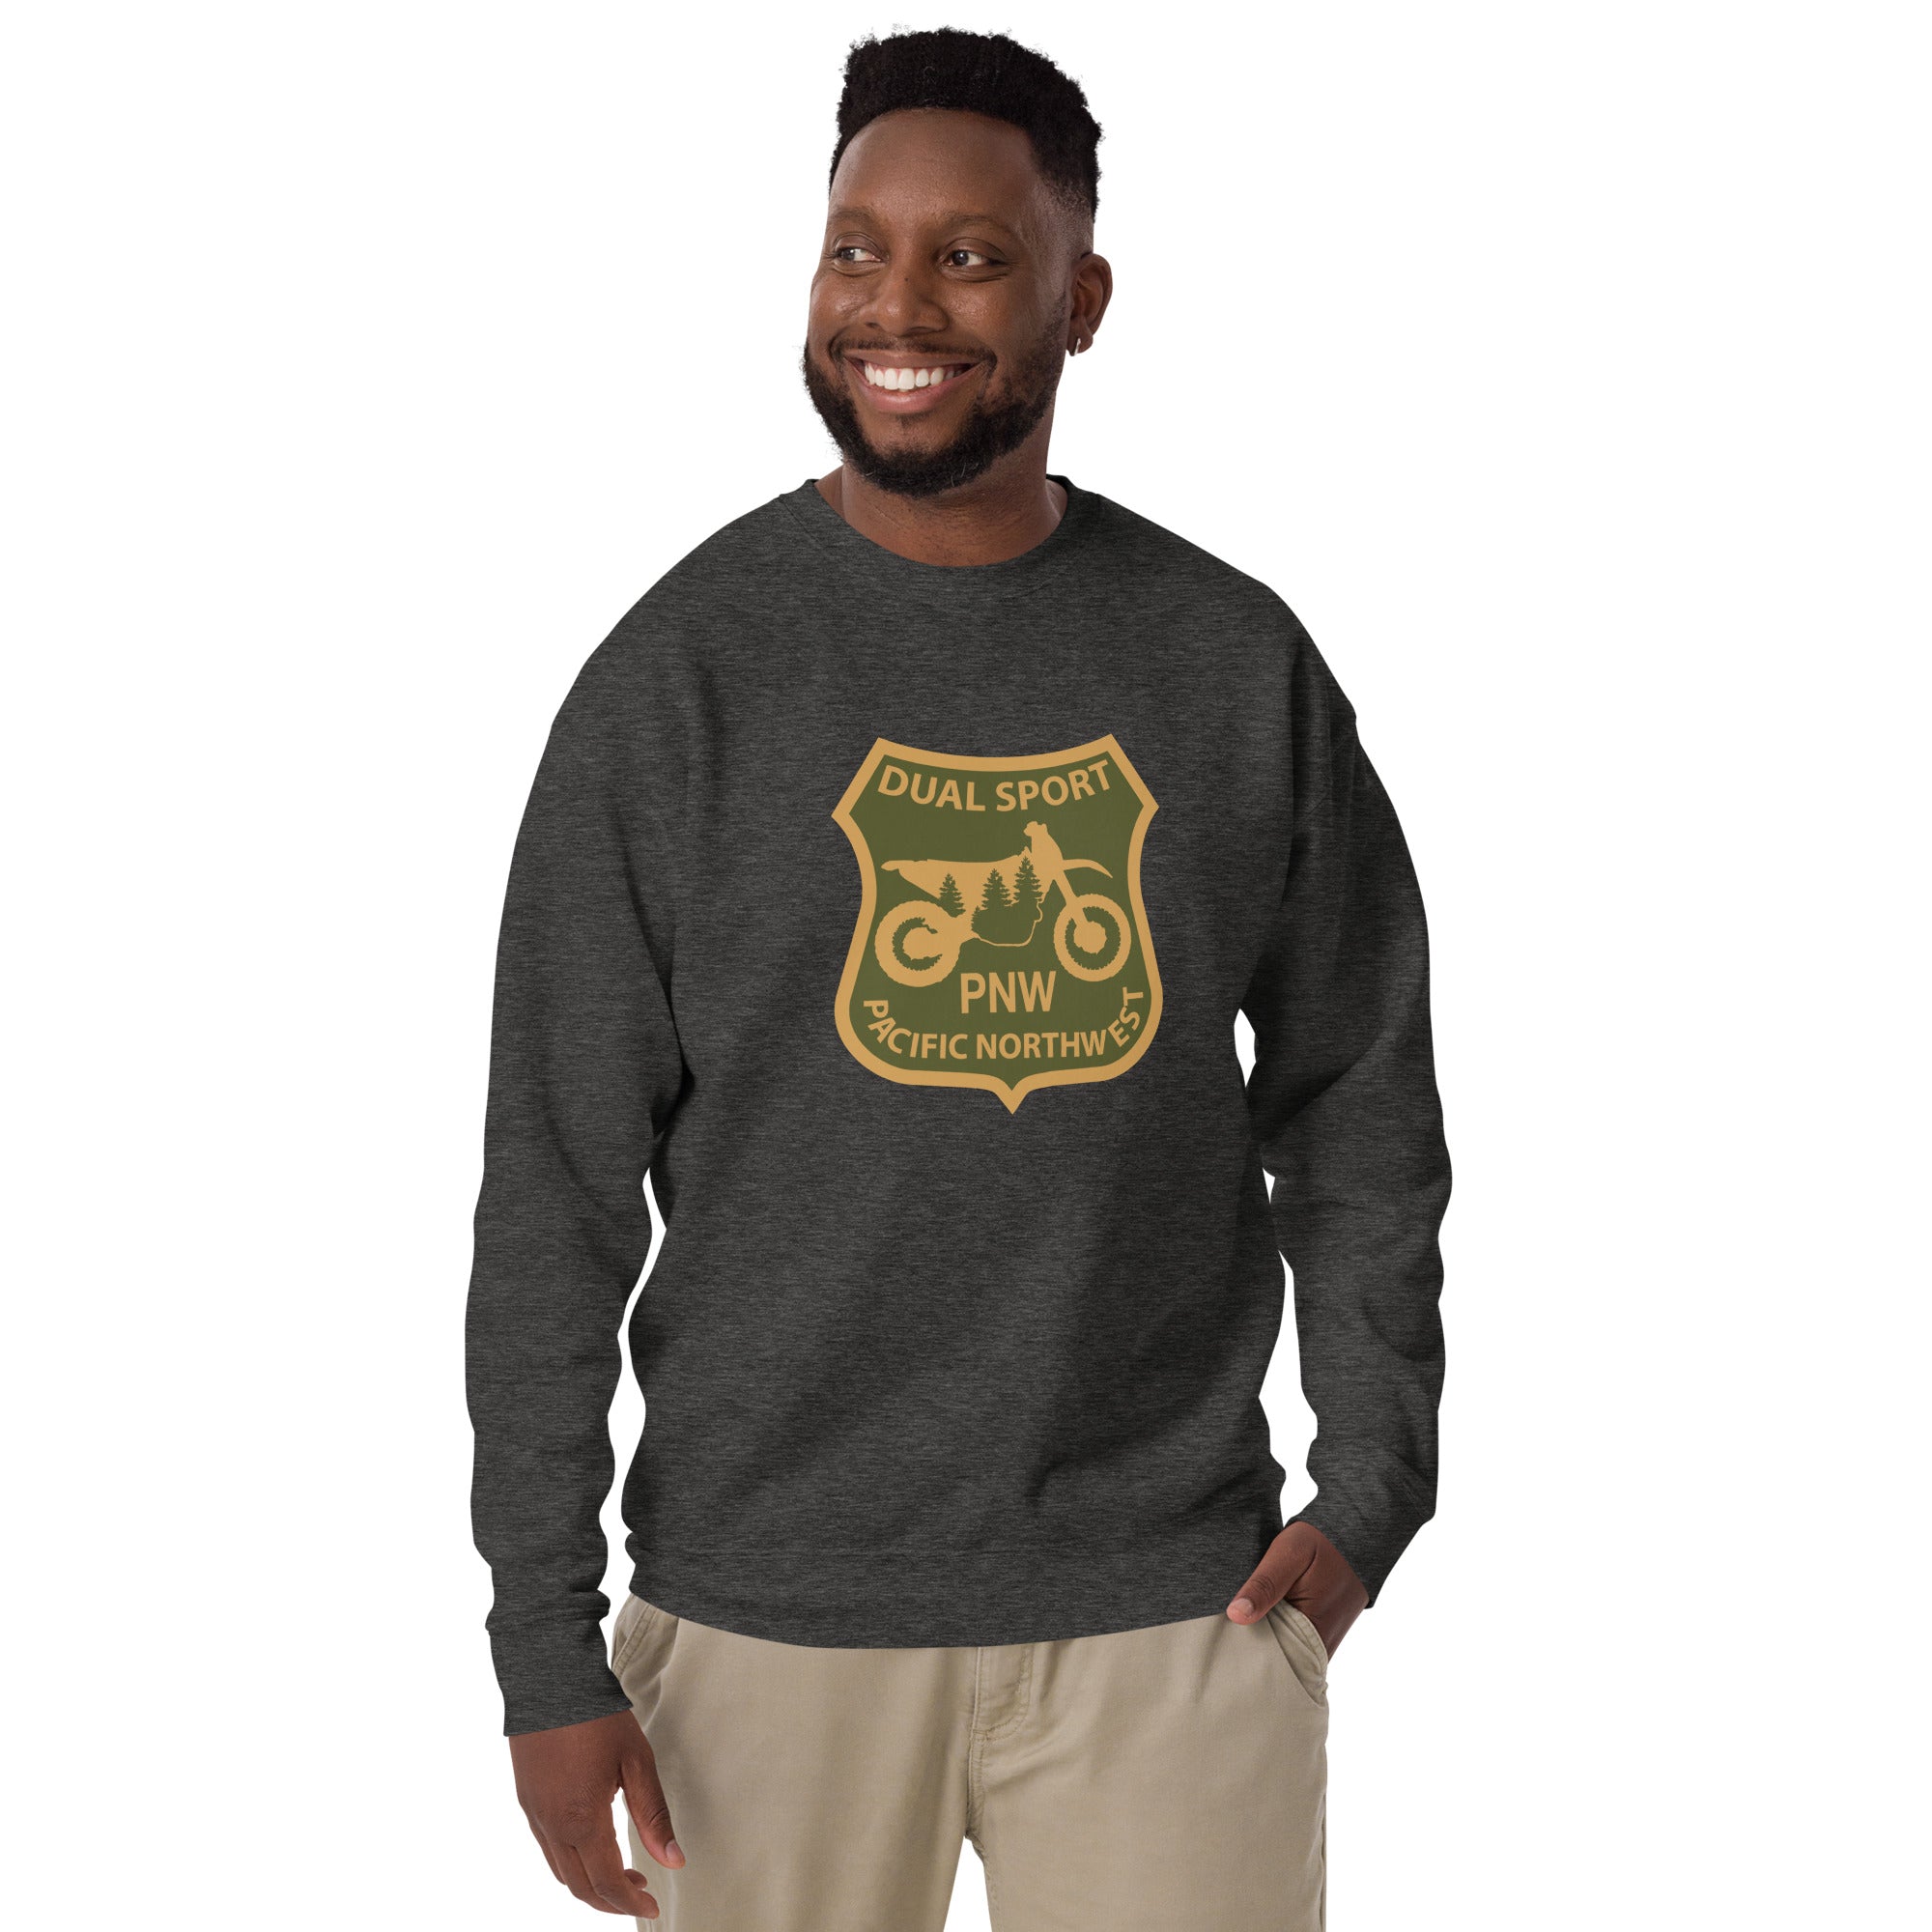 PNWDS Sweater, Premium